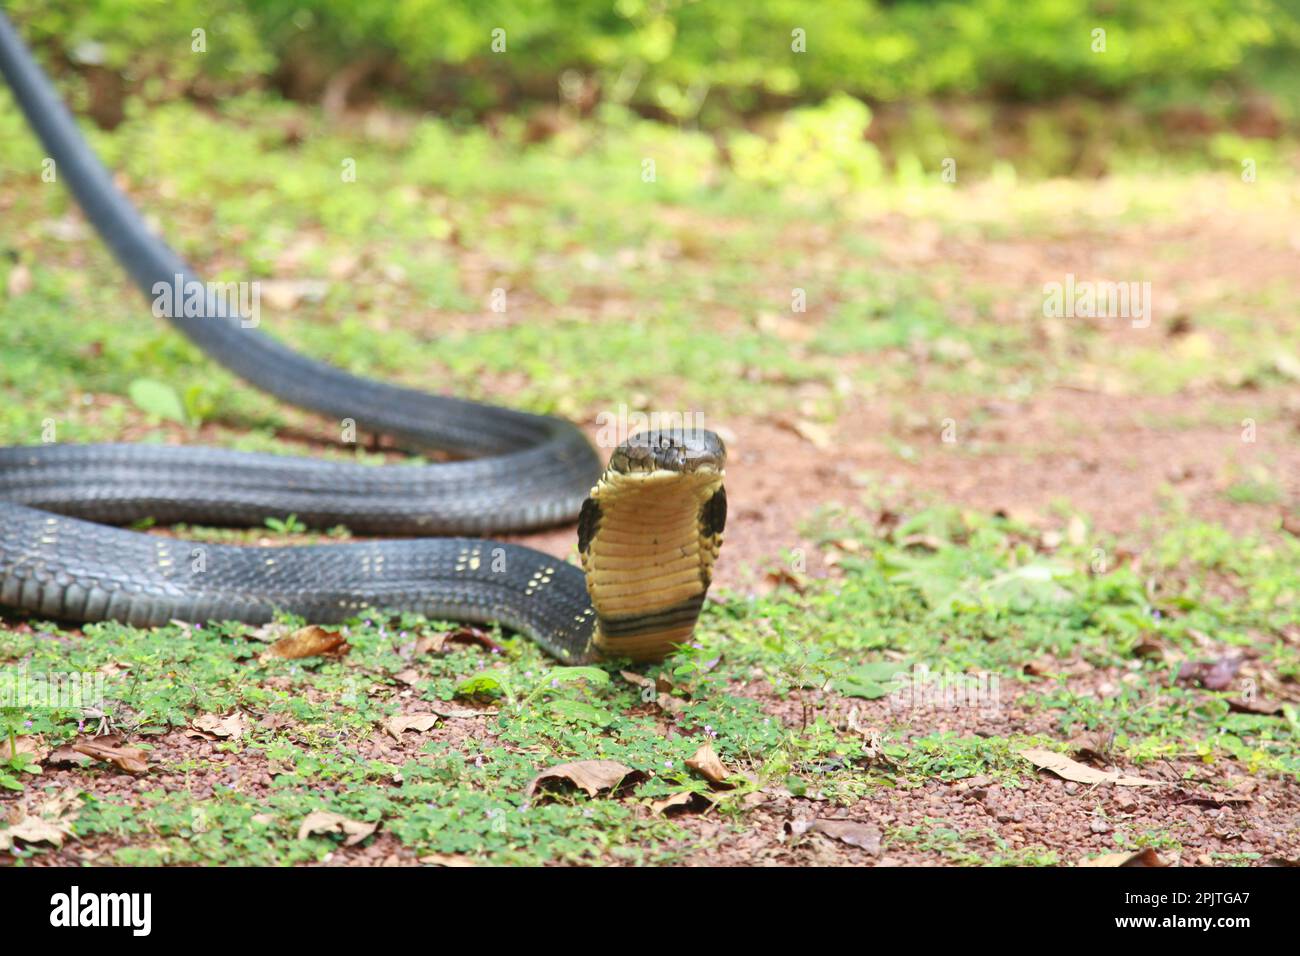 Königskobra (Ophiophagus hannah) ist eine giftige Schlangenart von Elaffen, die im Dschungel in Süd- und Südostasien endemisch ist, goa india (2) Stockfoto